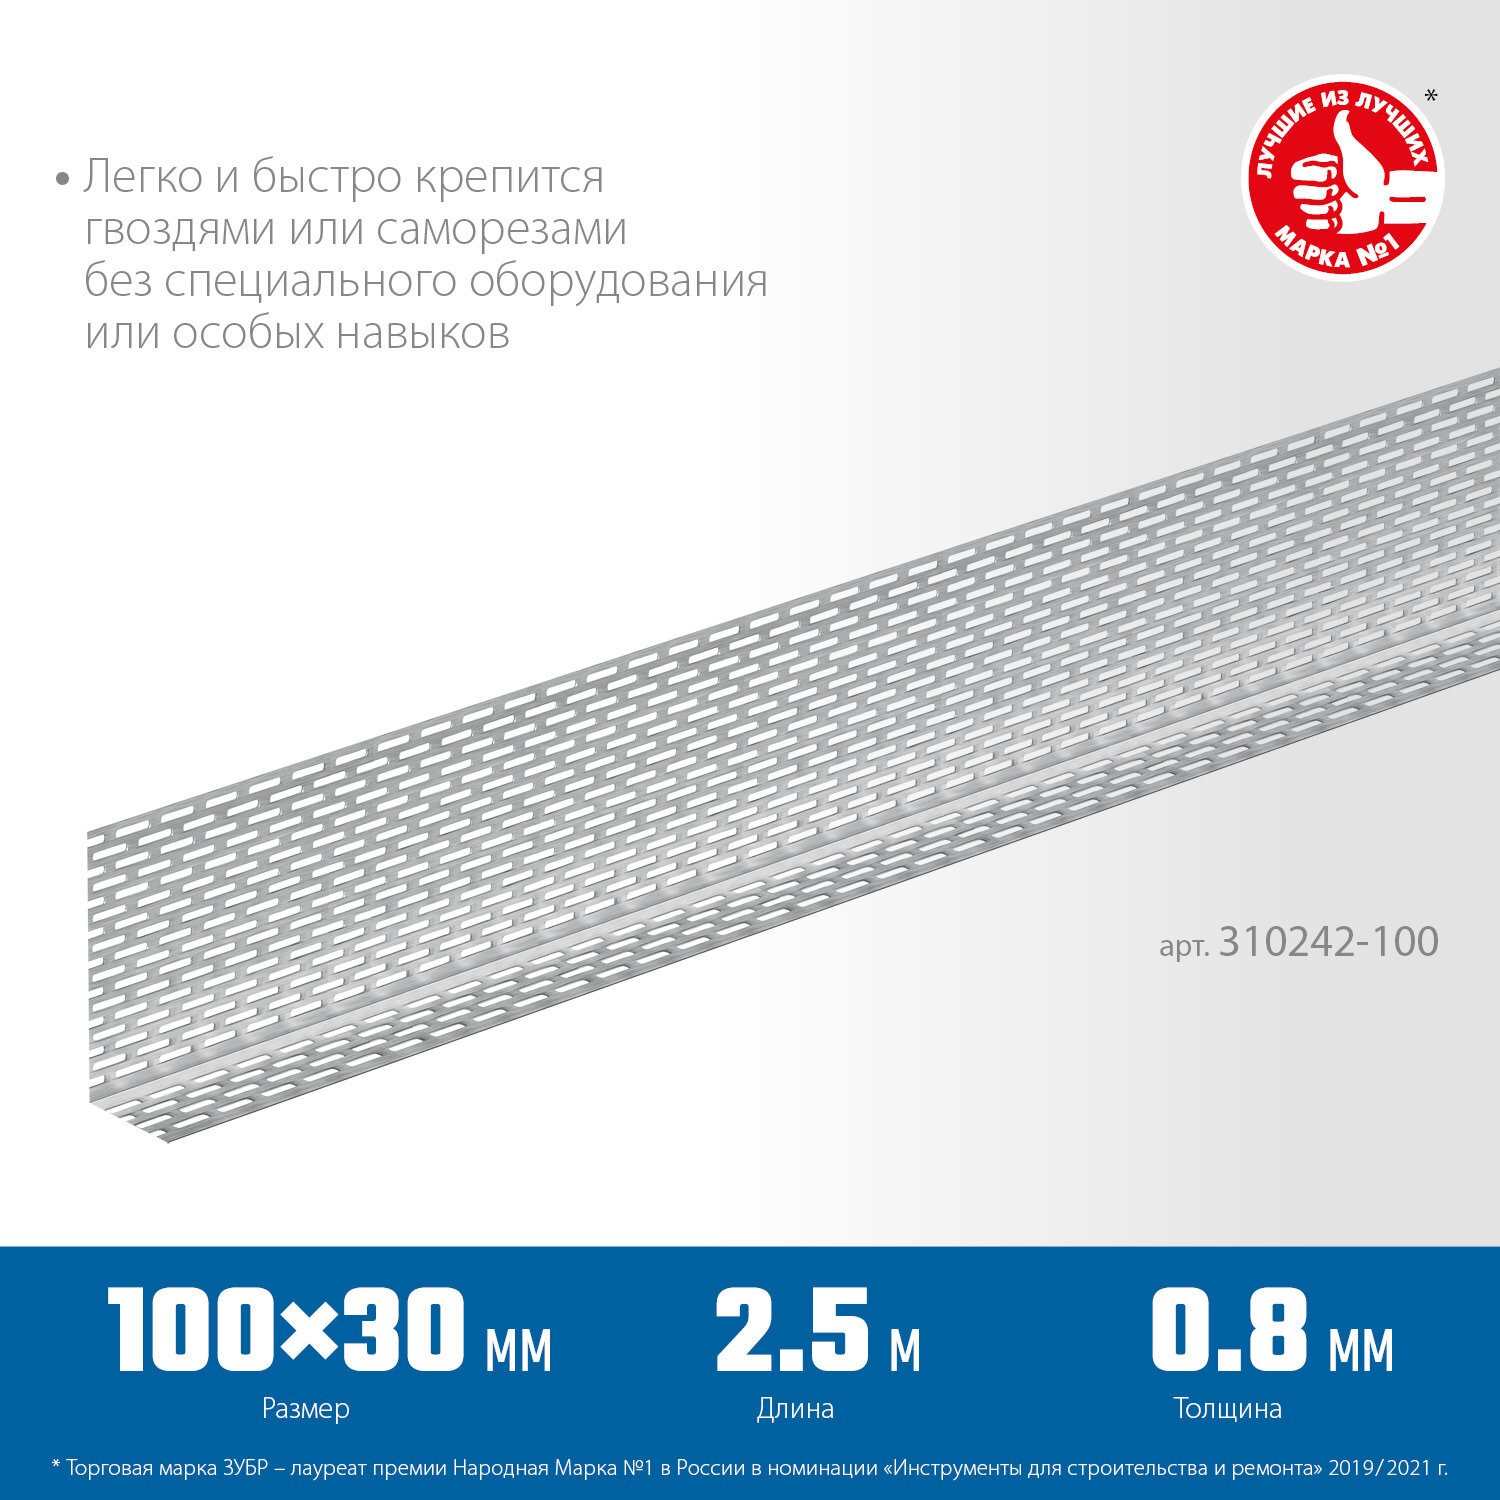 ЗУБР протектор 100 x 30 x 0.8 мм 25 м алюминиевый перфорированный вентиляционный профиль Профессионал (310242-100)